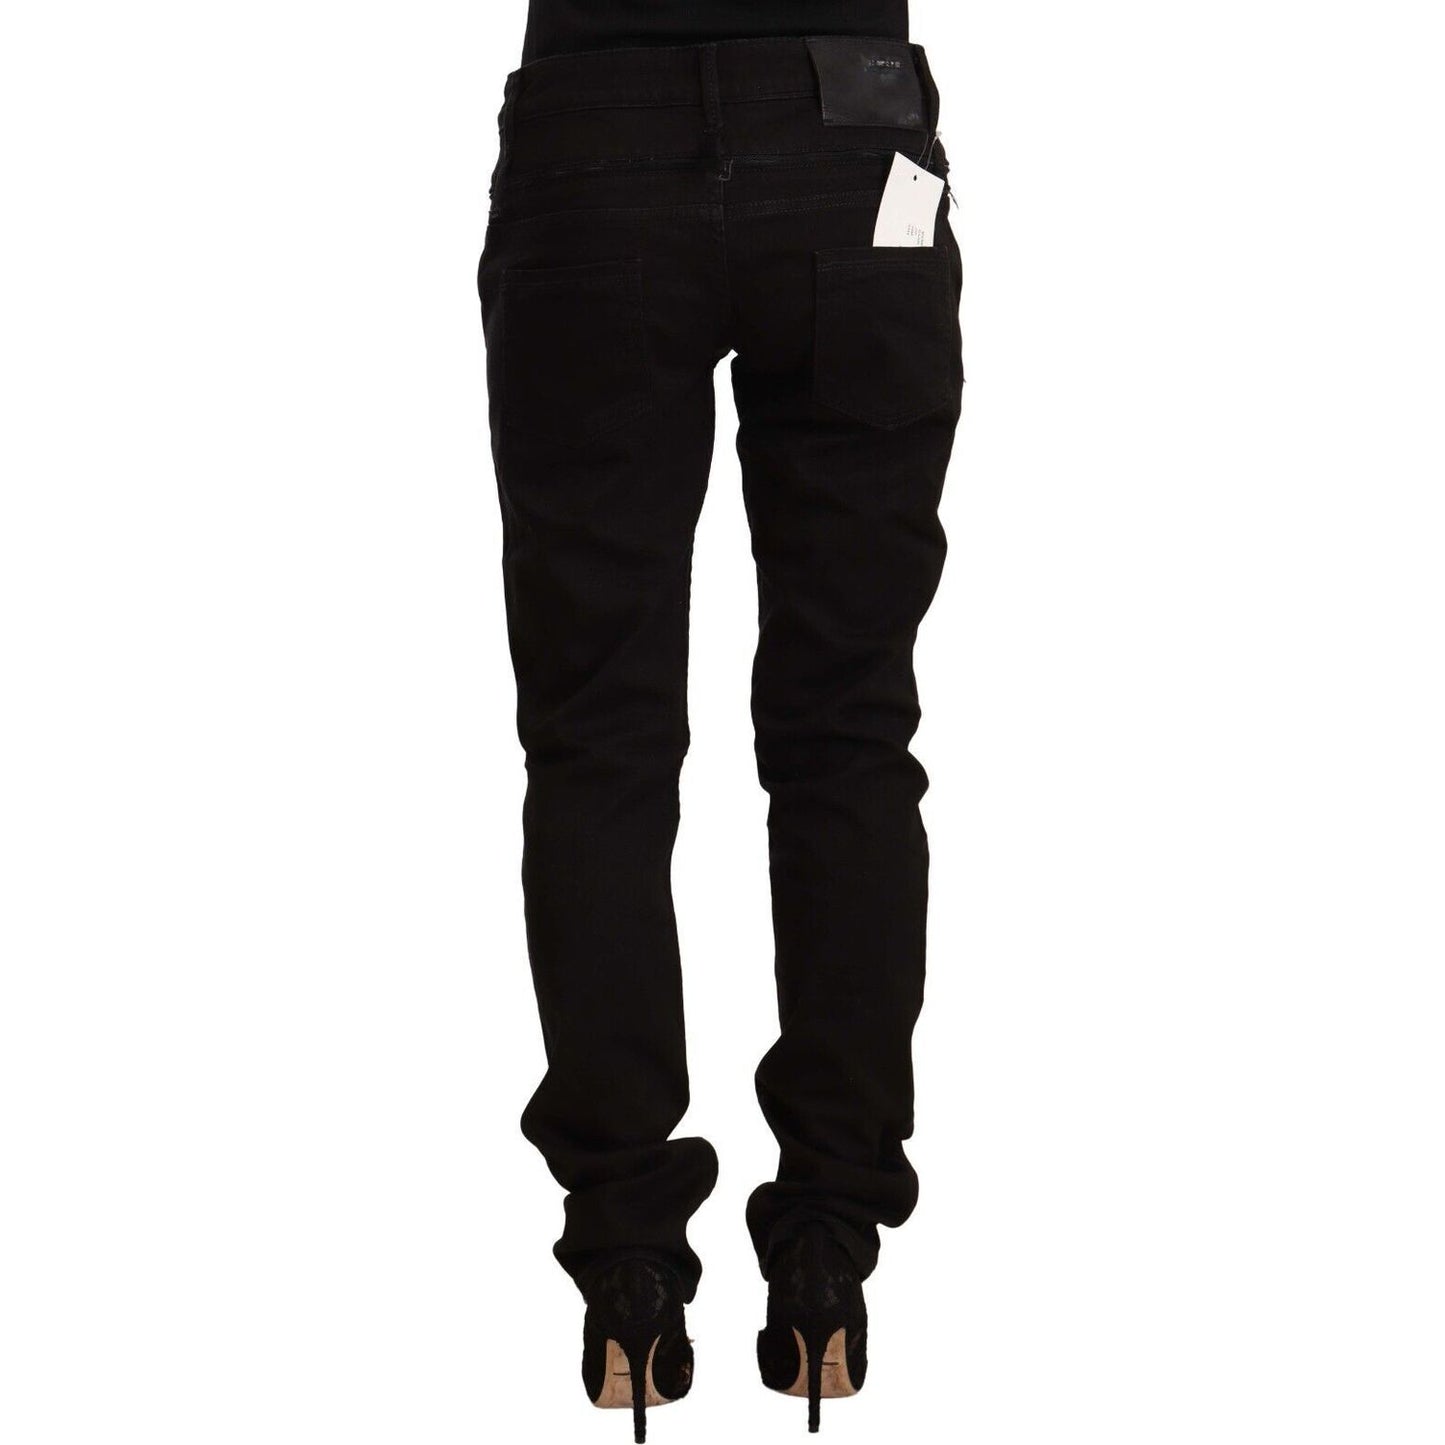 Acht Chic Black Low Waist Skinny Jeans black-low-waist-cotton-stretch-denim-skinny-jeans